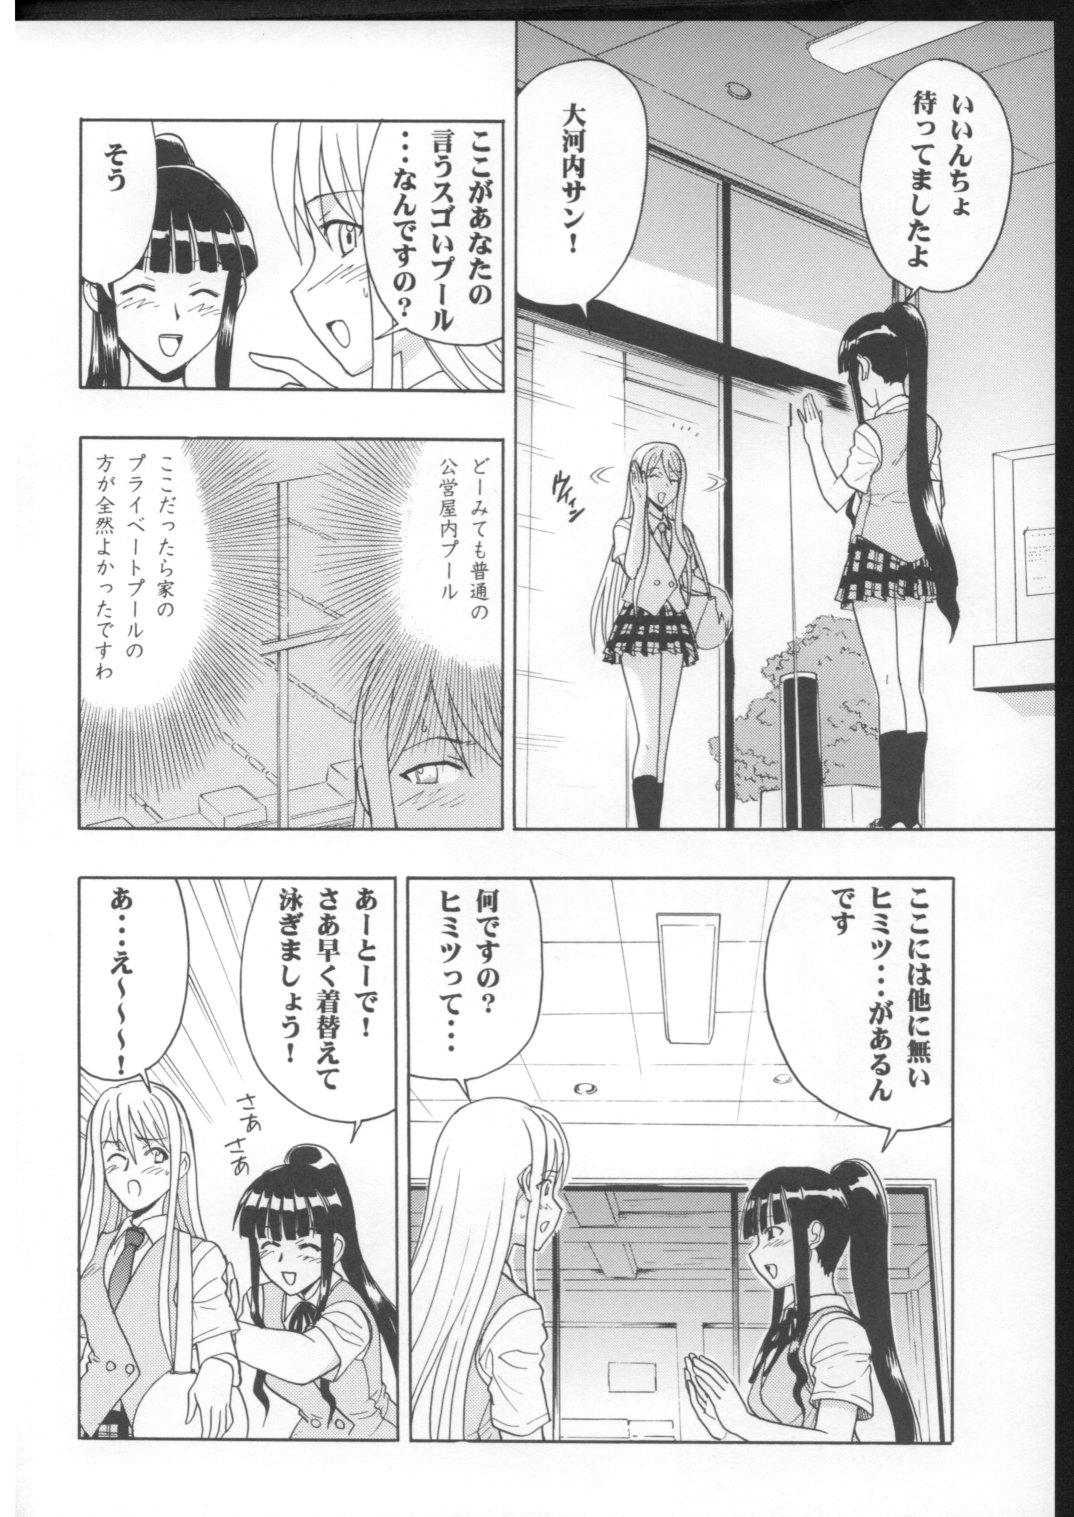 Groping Mahomizu - Mahou sensei negima Gonzo - Page 5